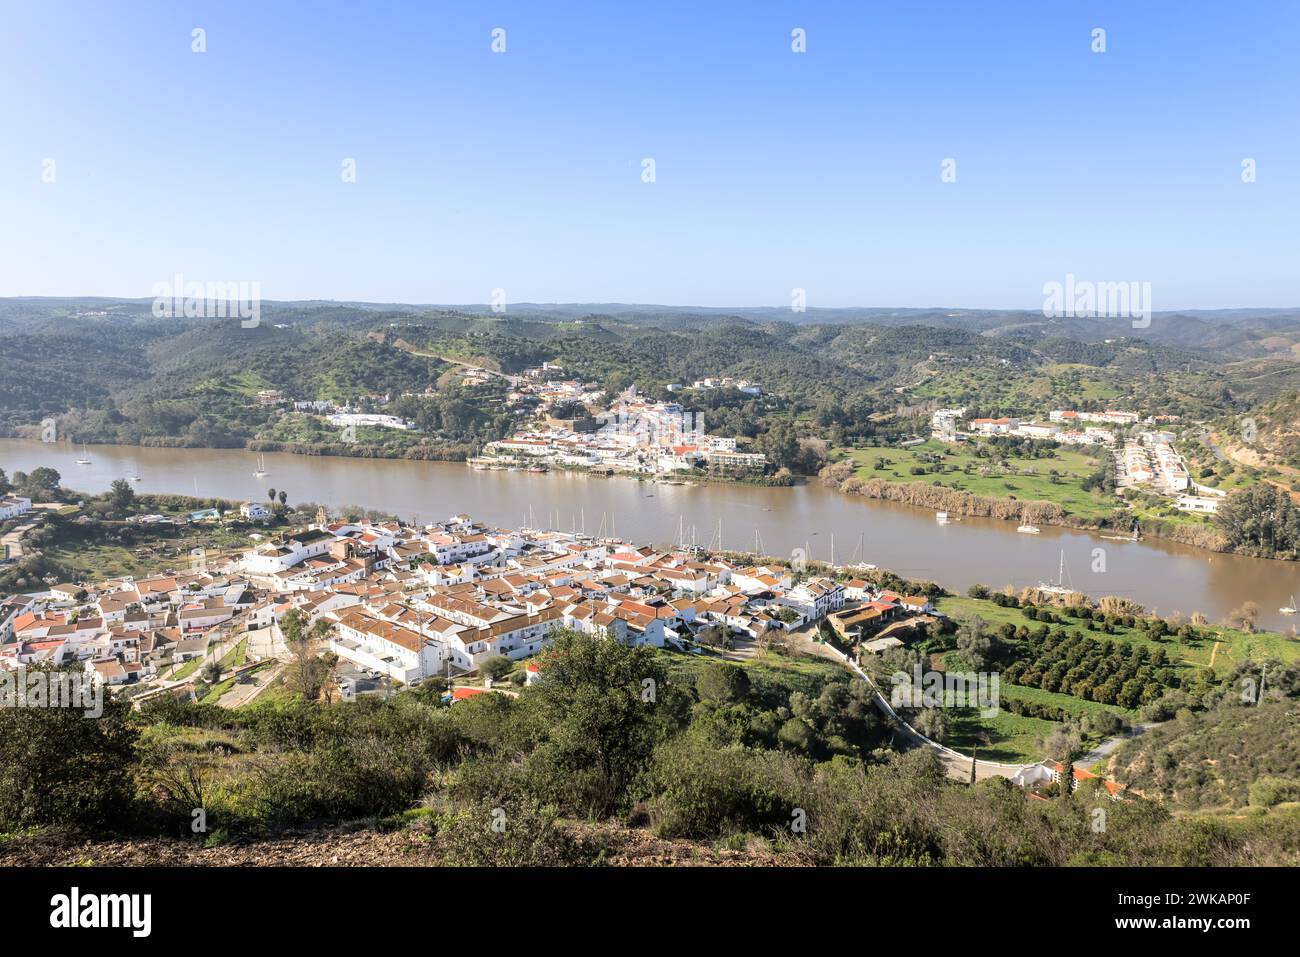 Vista aerea del villaggio di Sanlucar de Guadiana a Huelva, Andalusia, sulle rive del fiume Guadiana, al confine tra spagna e portogallo, di fronte Foto Stock